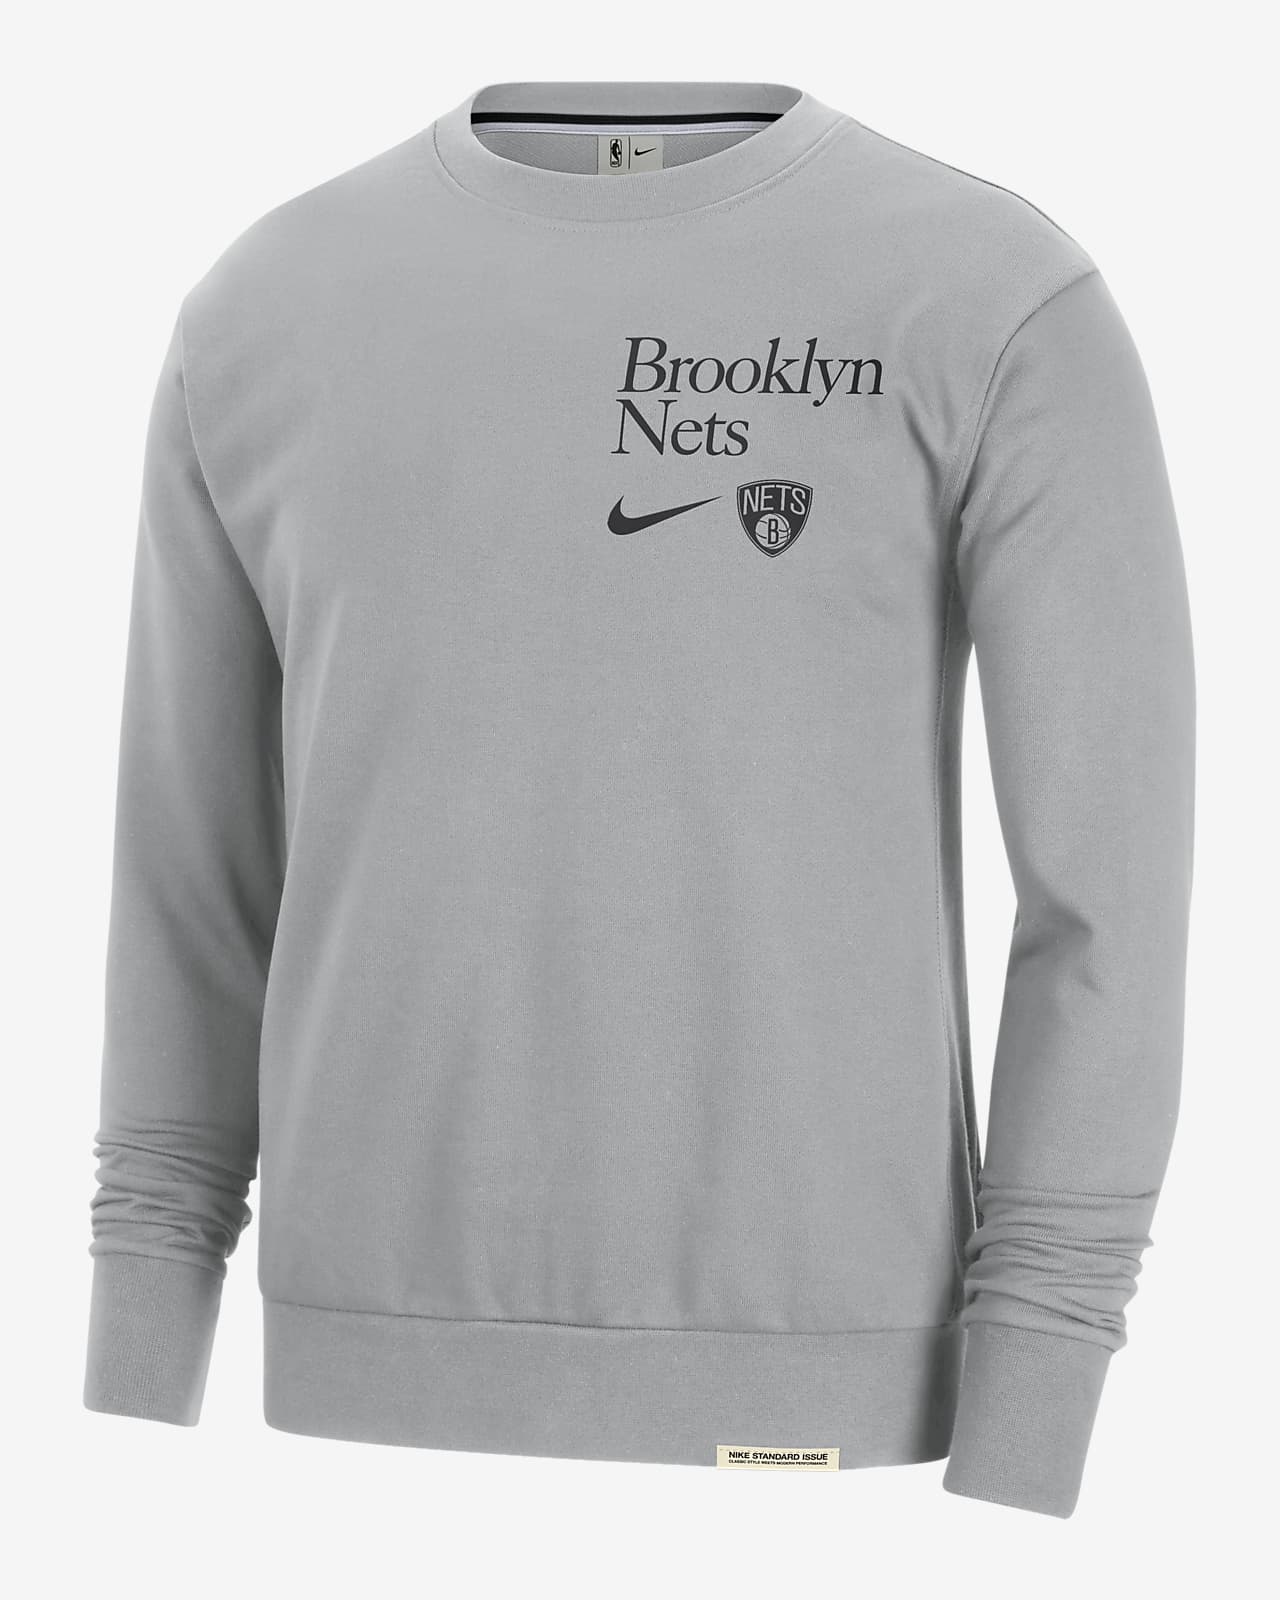 Brooklyn Nets Standard Issue Men's Nike Dri-FIT NBA Crew-Neck Sweatshirt